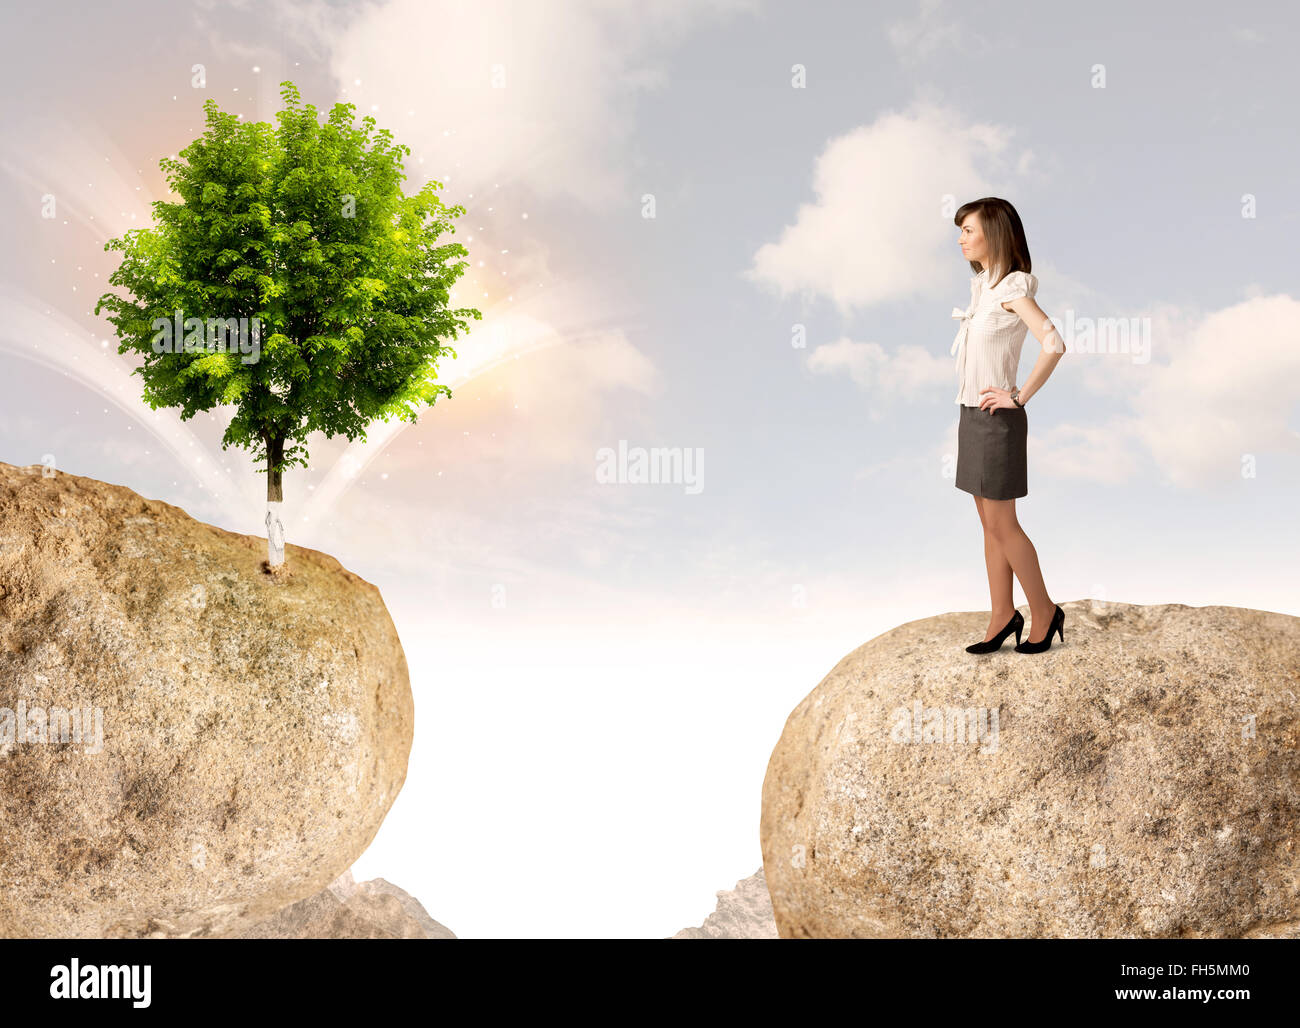 Businesswoman on rock mountain avec un arbre Banque D'Images